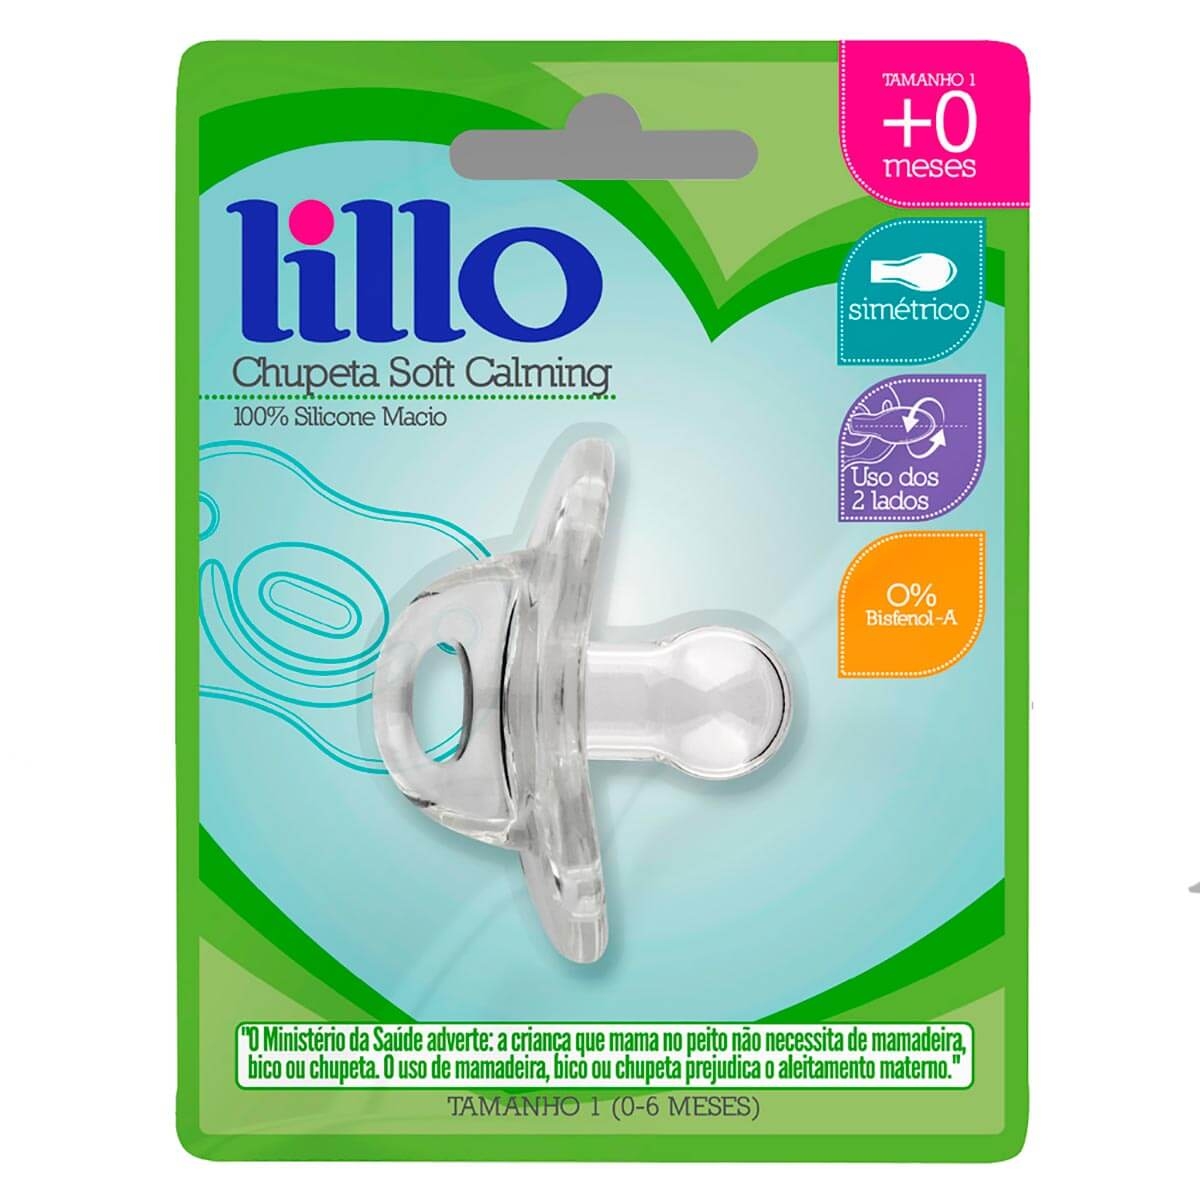 Chupeta de Silicone Lillo Soft Calming Tamanho 1 Transparente com 1 unidade 1 Unidade